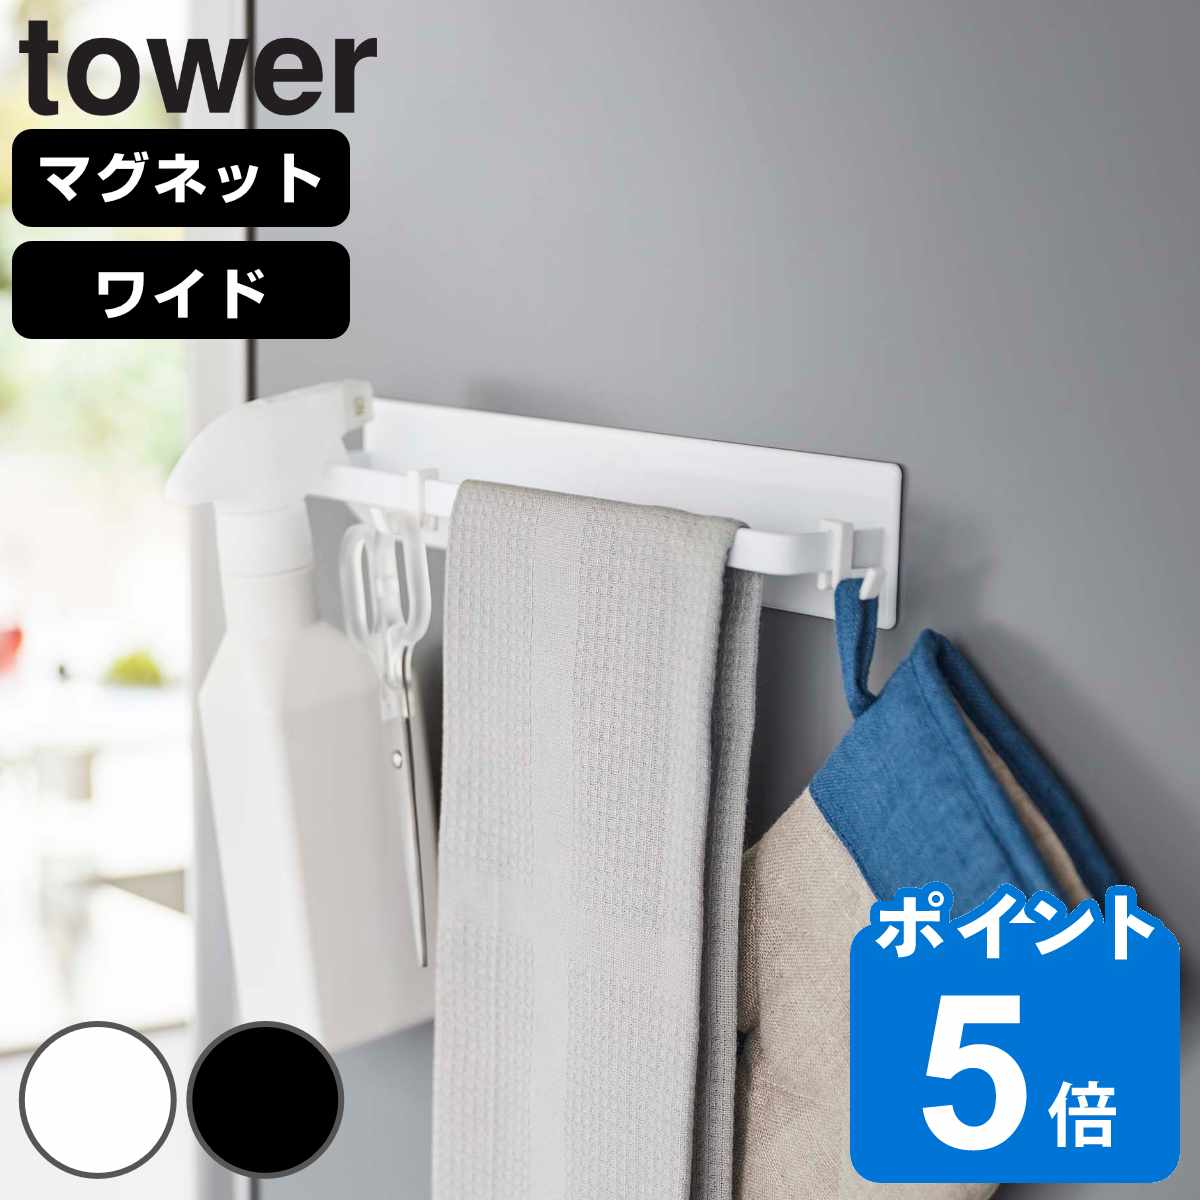 山崎実業 tower マグネットキッチンタオルハンガー タワー ワイド